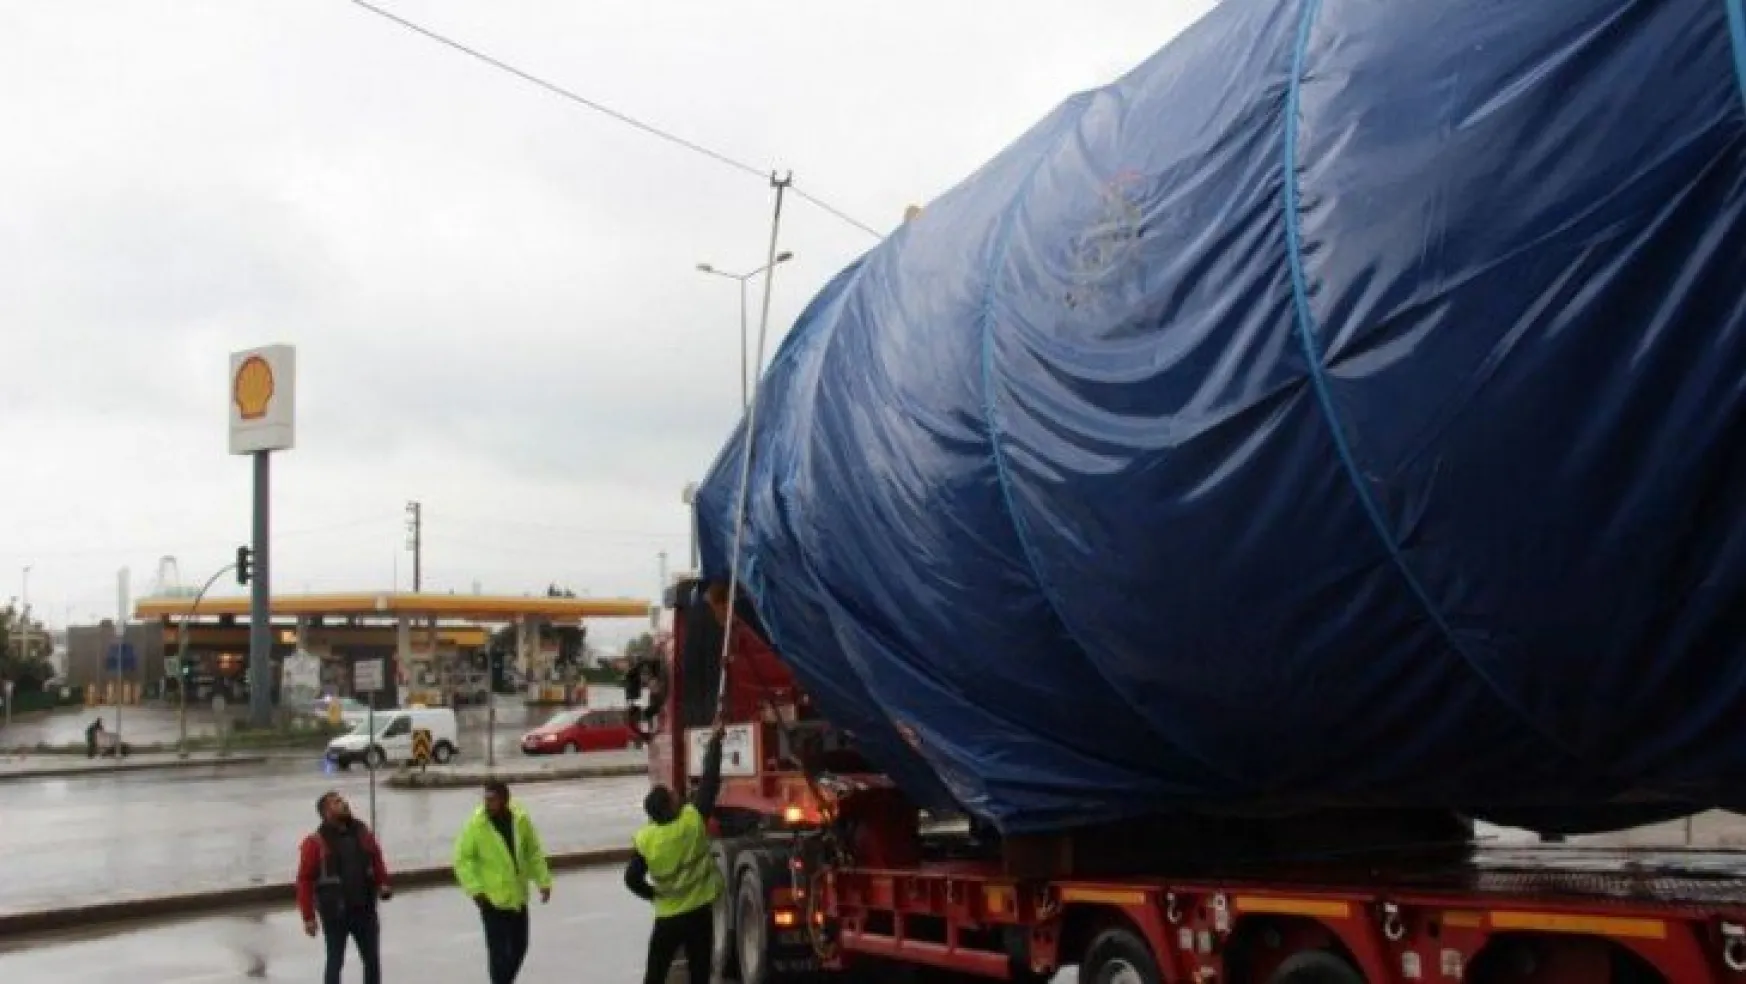 Milyonluk ihracat Gebze'de elektrik tellerine takıldı